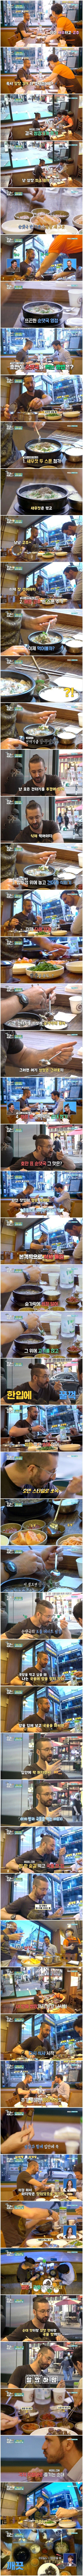 한국인화 되어가는 외국인의 국밥 먹는법